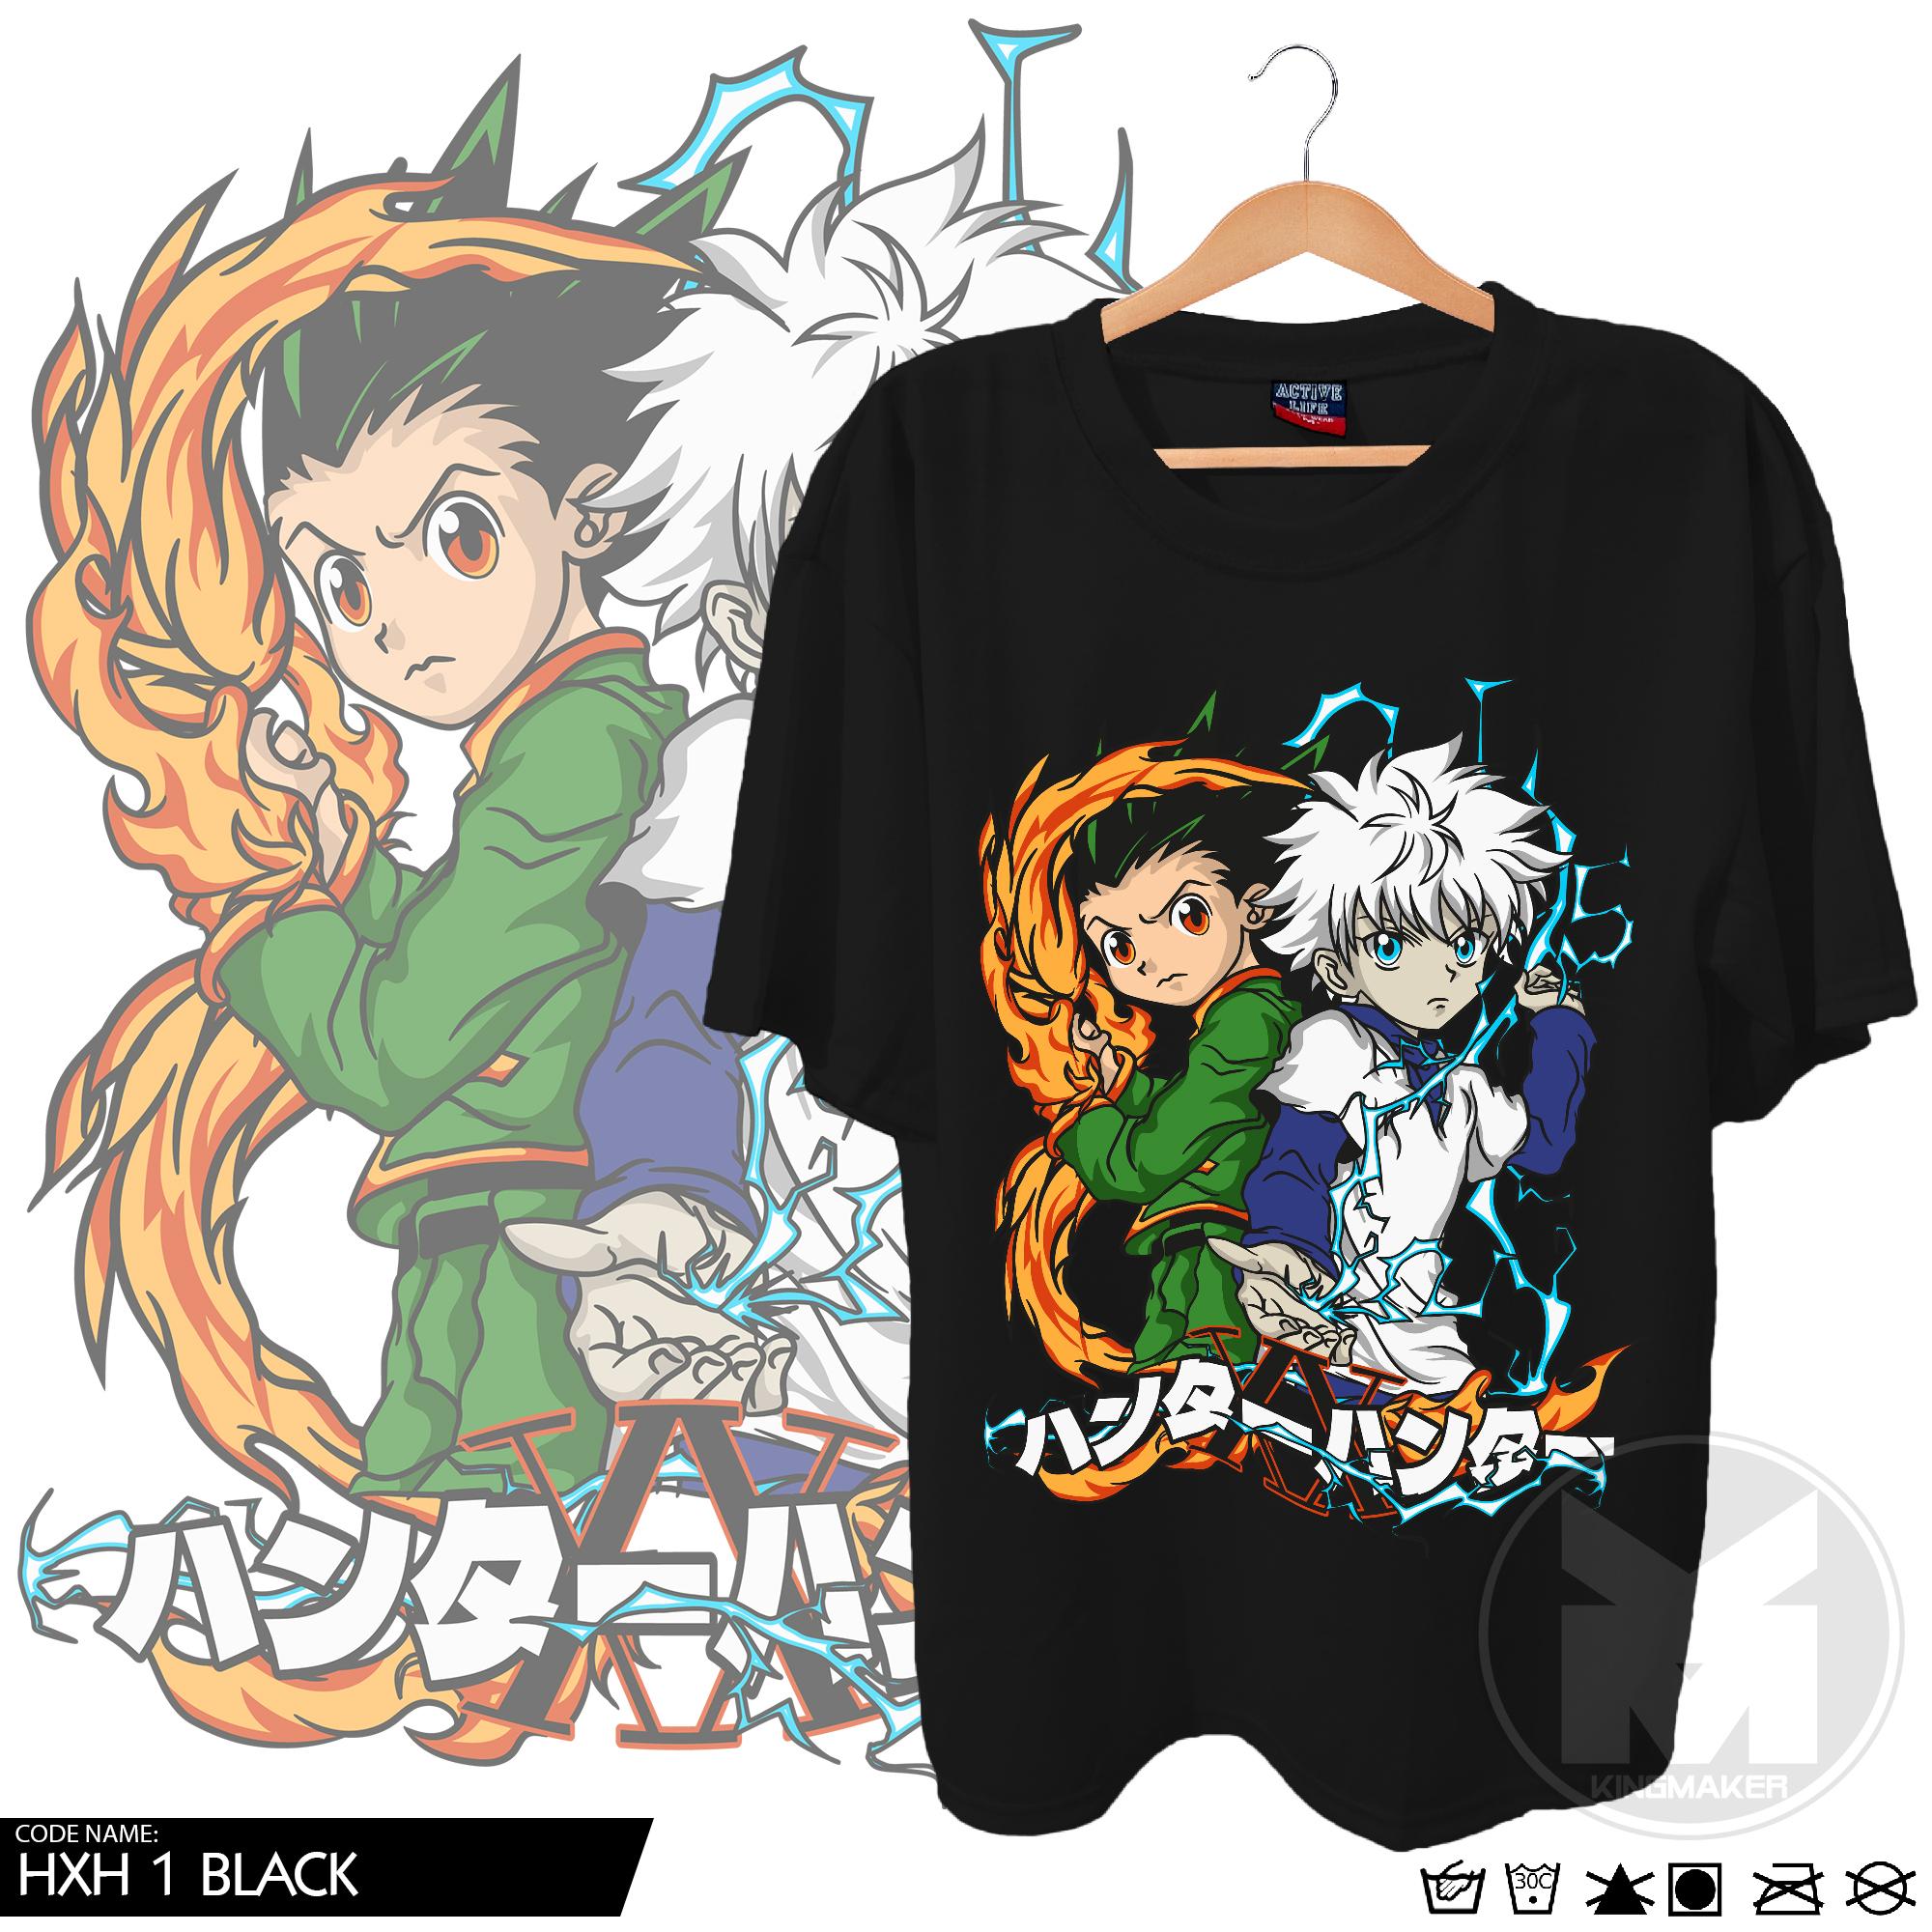 Male Round Naruto Tshirt Anime Tshirt, Size: XL, Printed